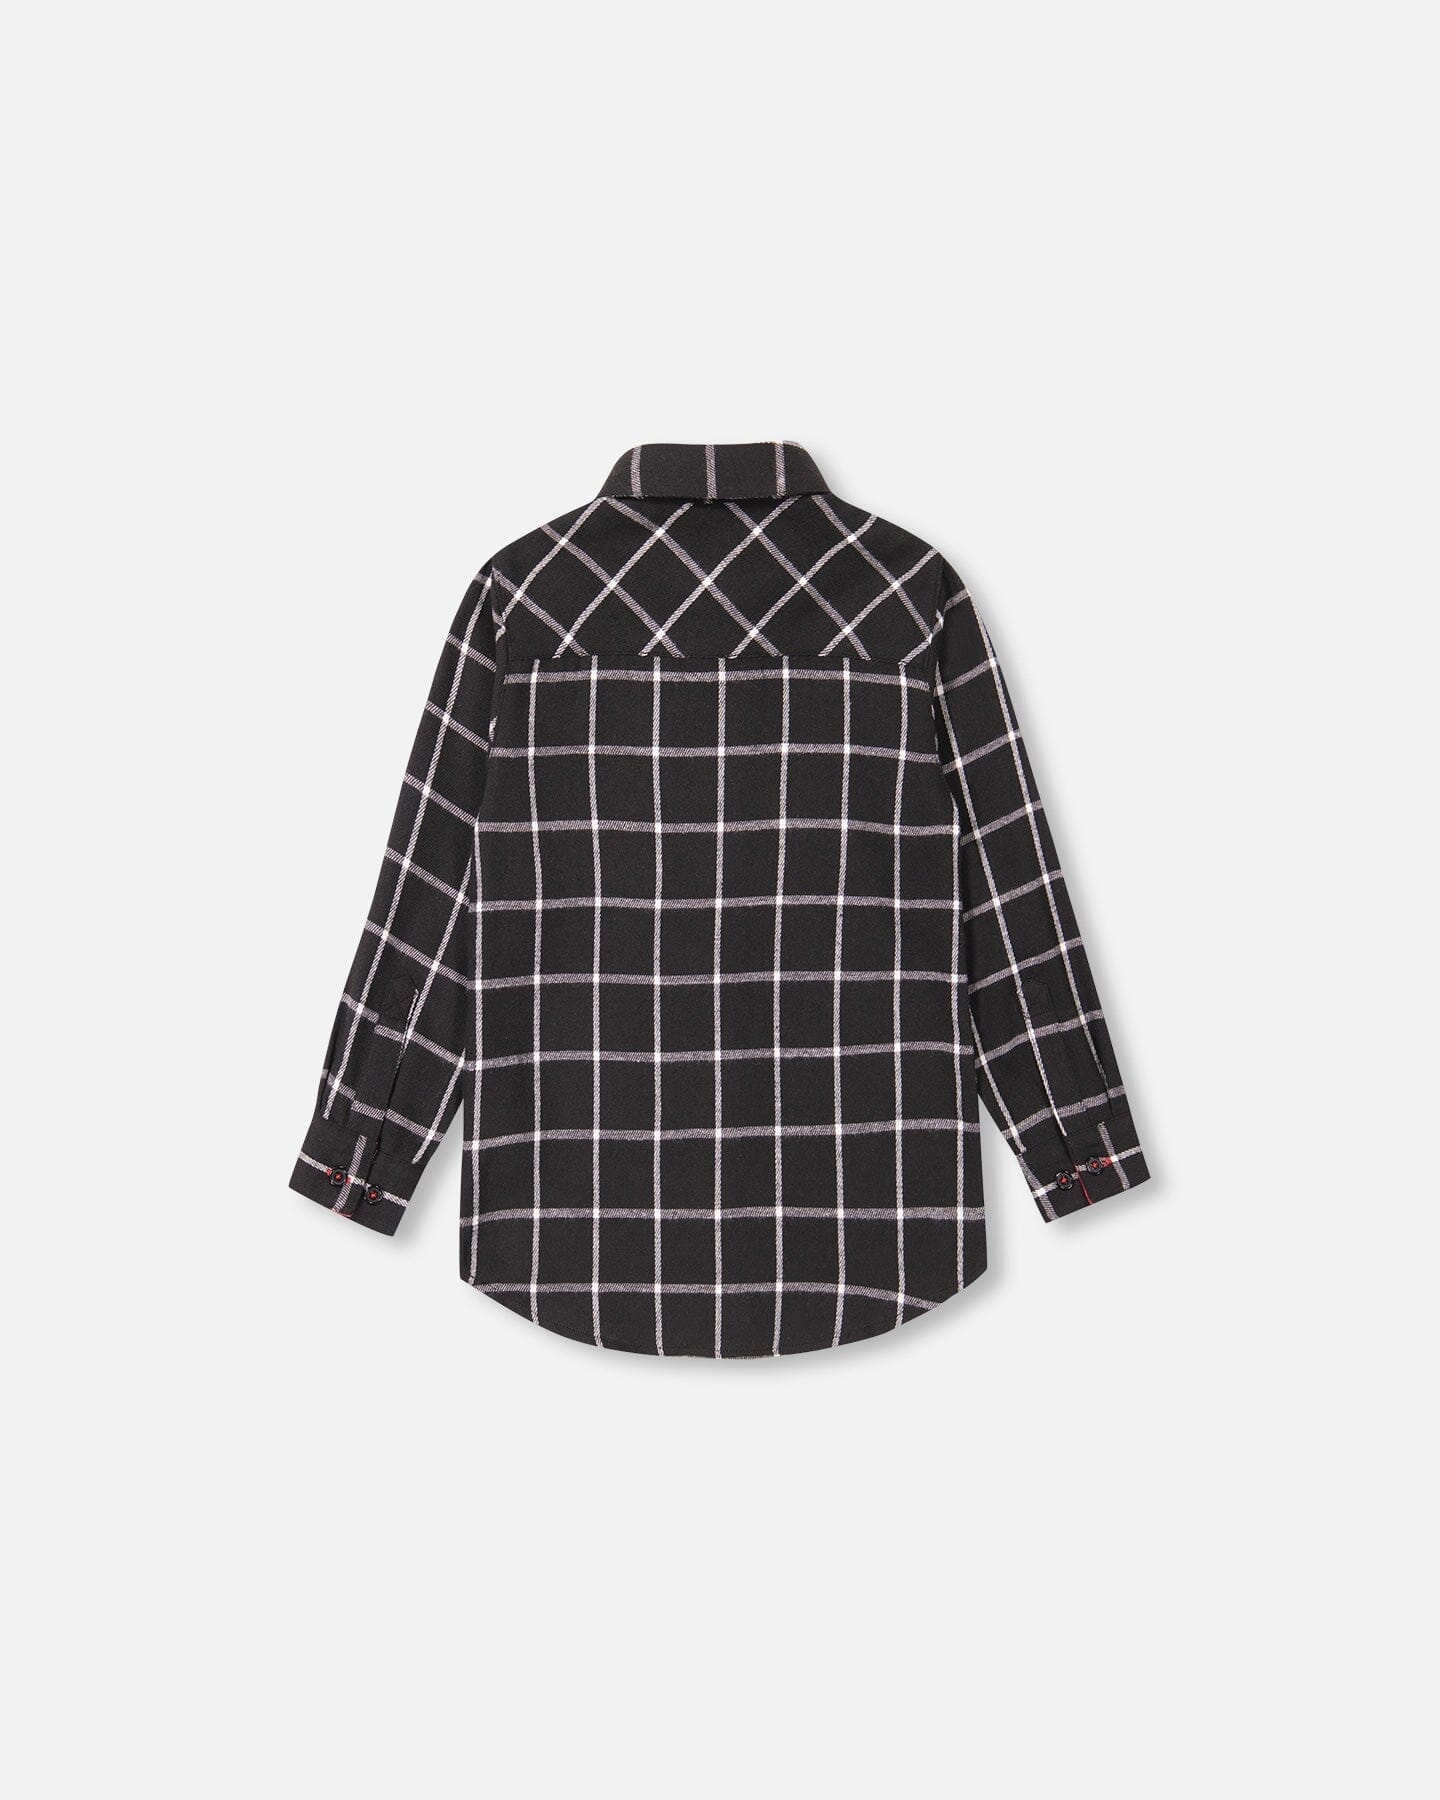 Flannel Shirt Black Plaid